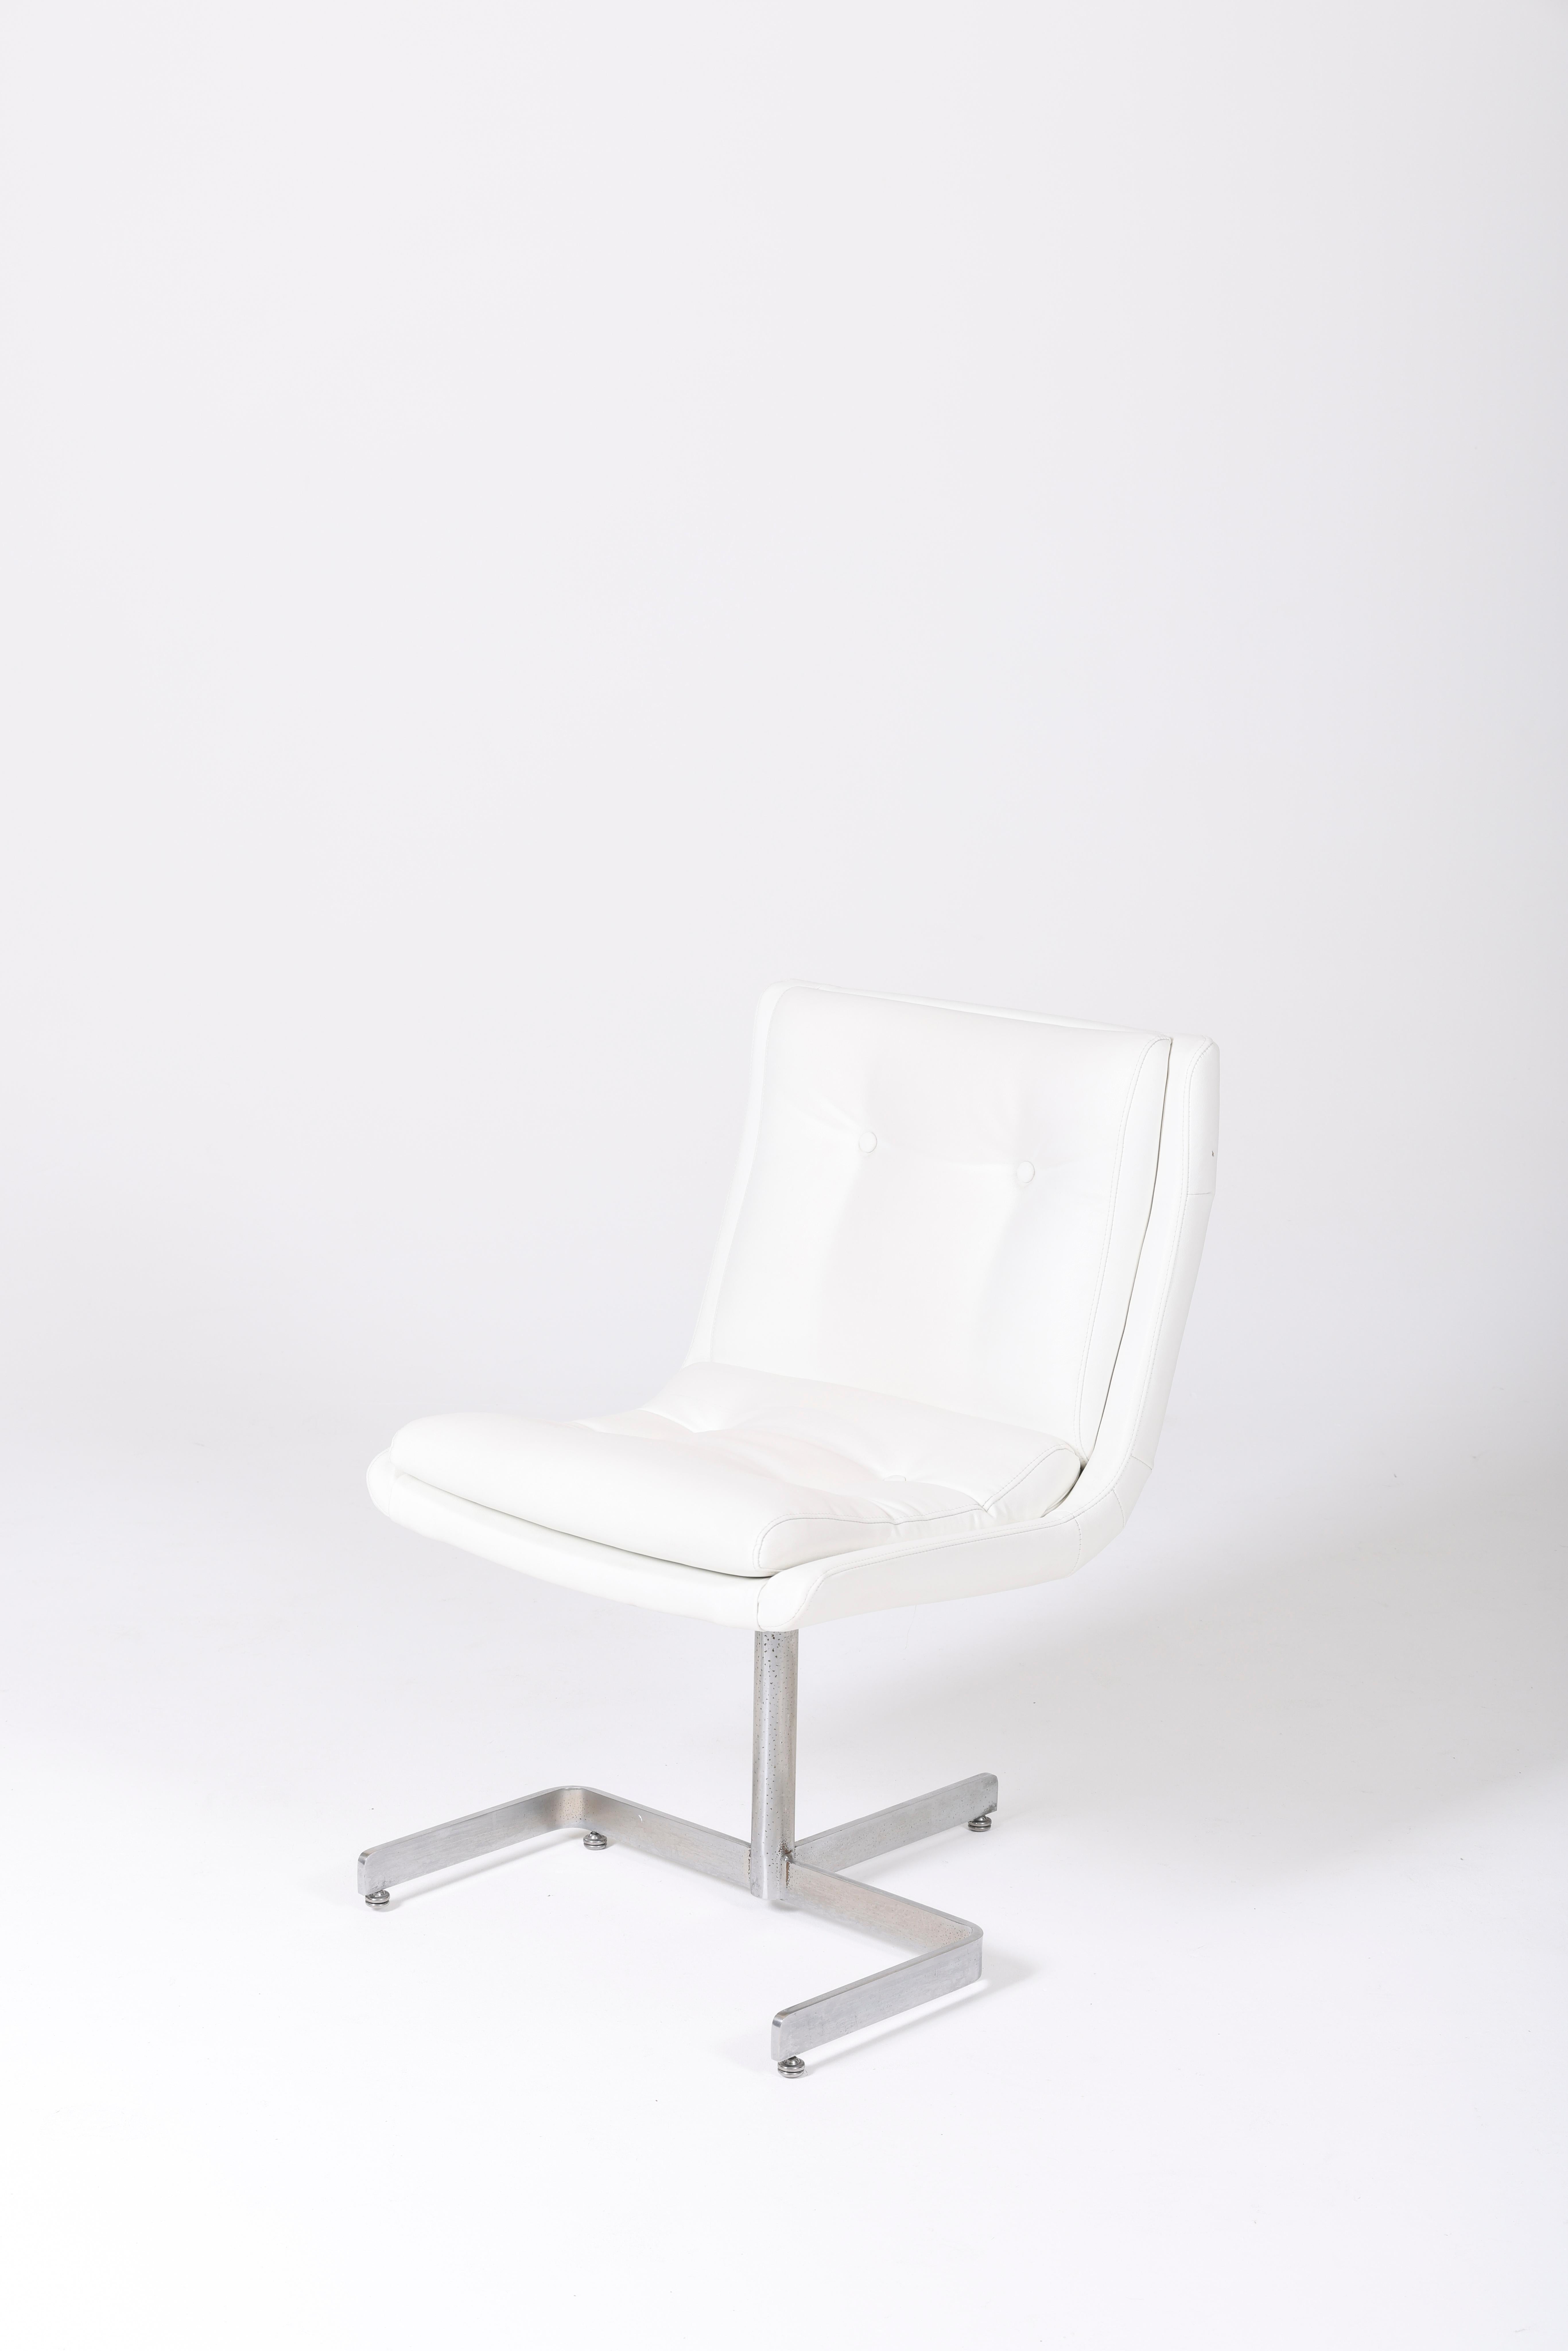 Stuhl des Designers Raphael Raffel aus den 1970er Jahren. Der Sitz und die Rückenlehne sind aus weißem Leder, das Gestell ist aus Metall gefertigt. In sehr gutem Zustand.
LP976